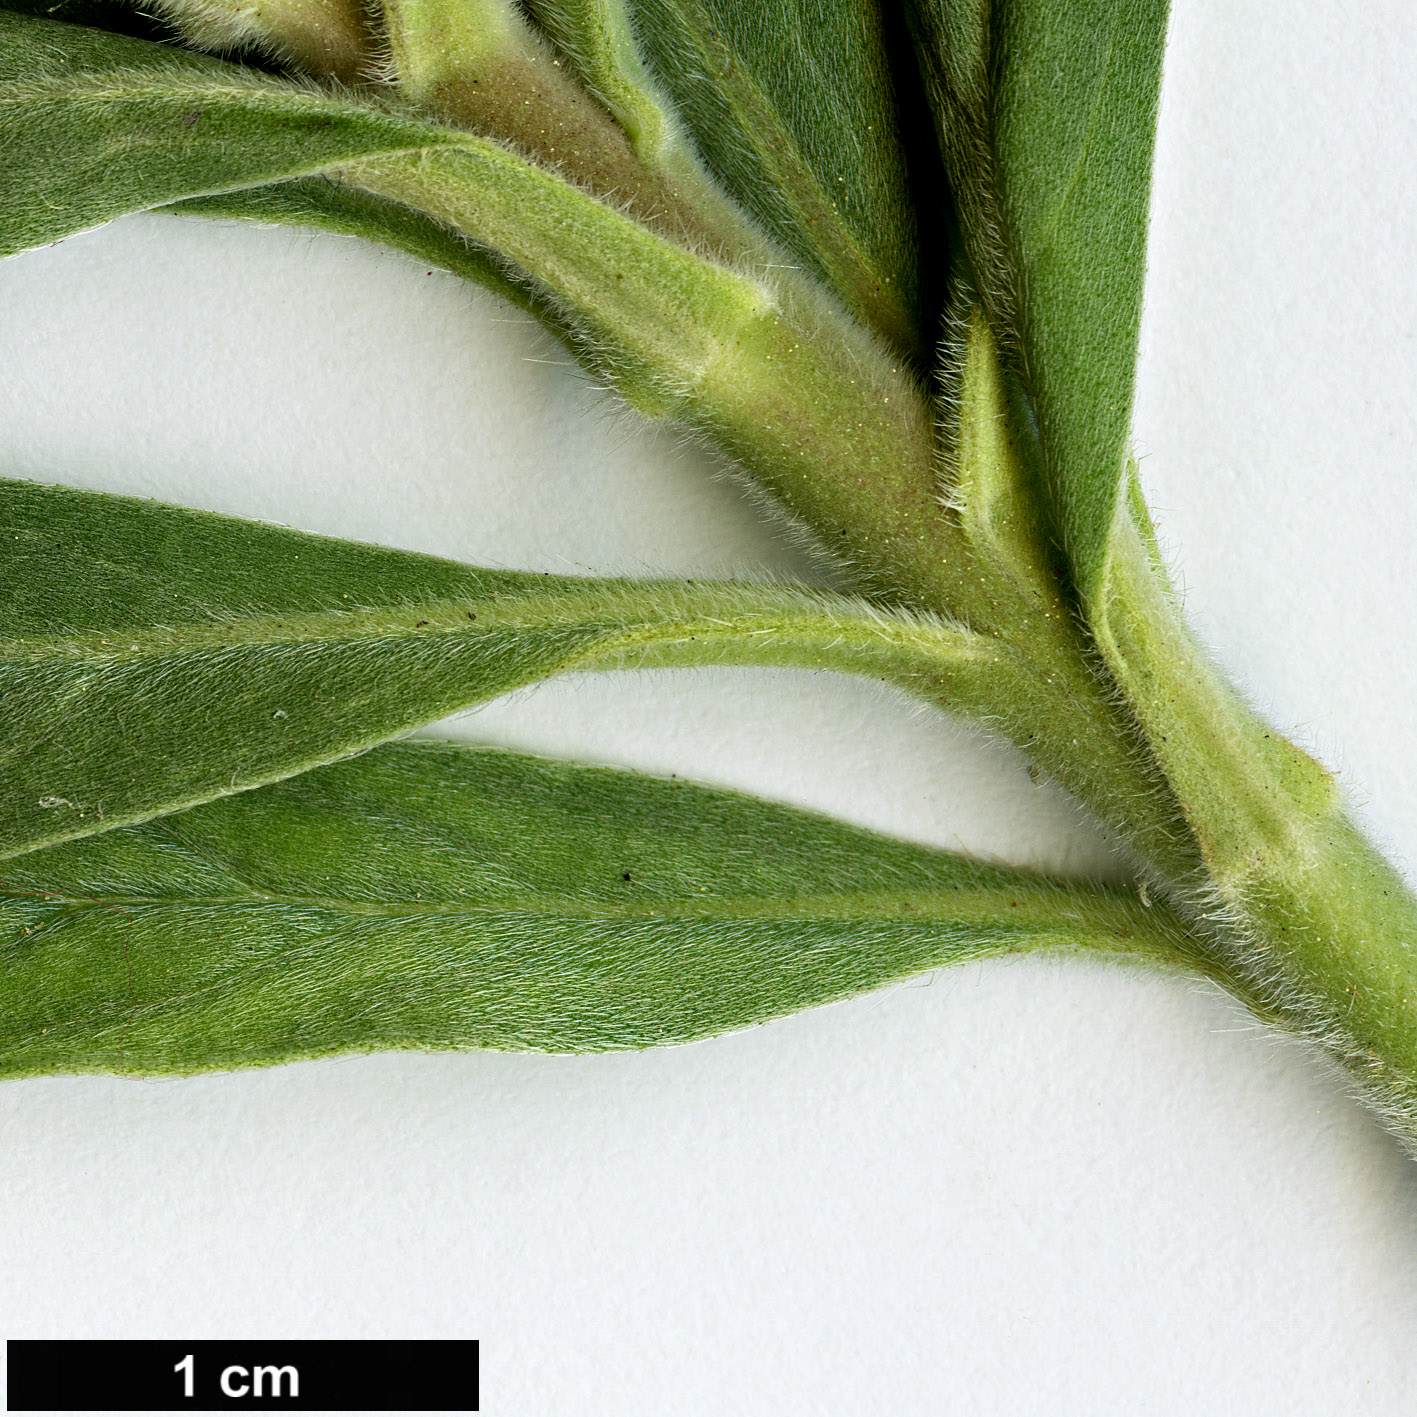 High resolution image: Family: Boraginaceae - Genus: Echium - Taxon: virescens